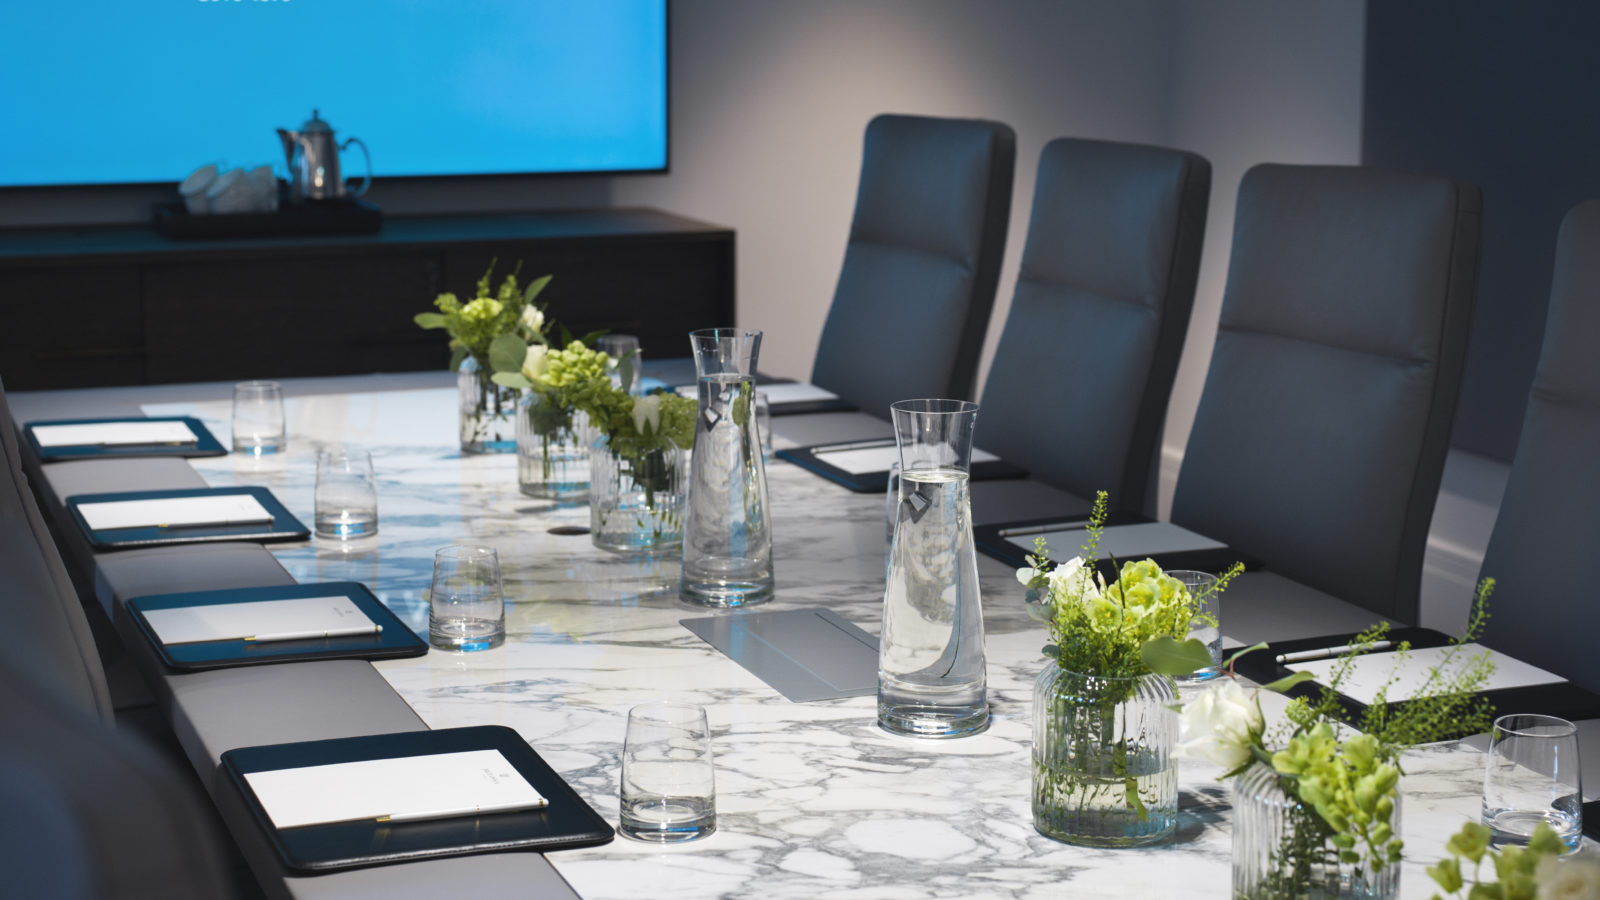 Møterom i Trondheim med marmorbord og gode kontorstoler